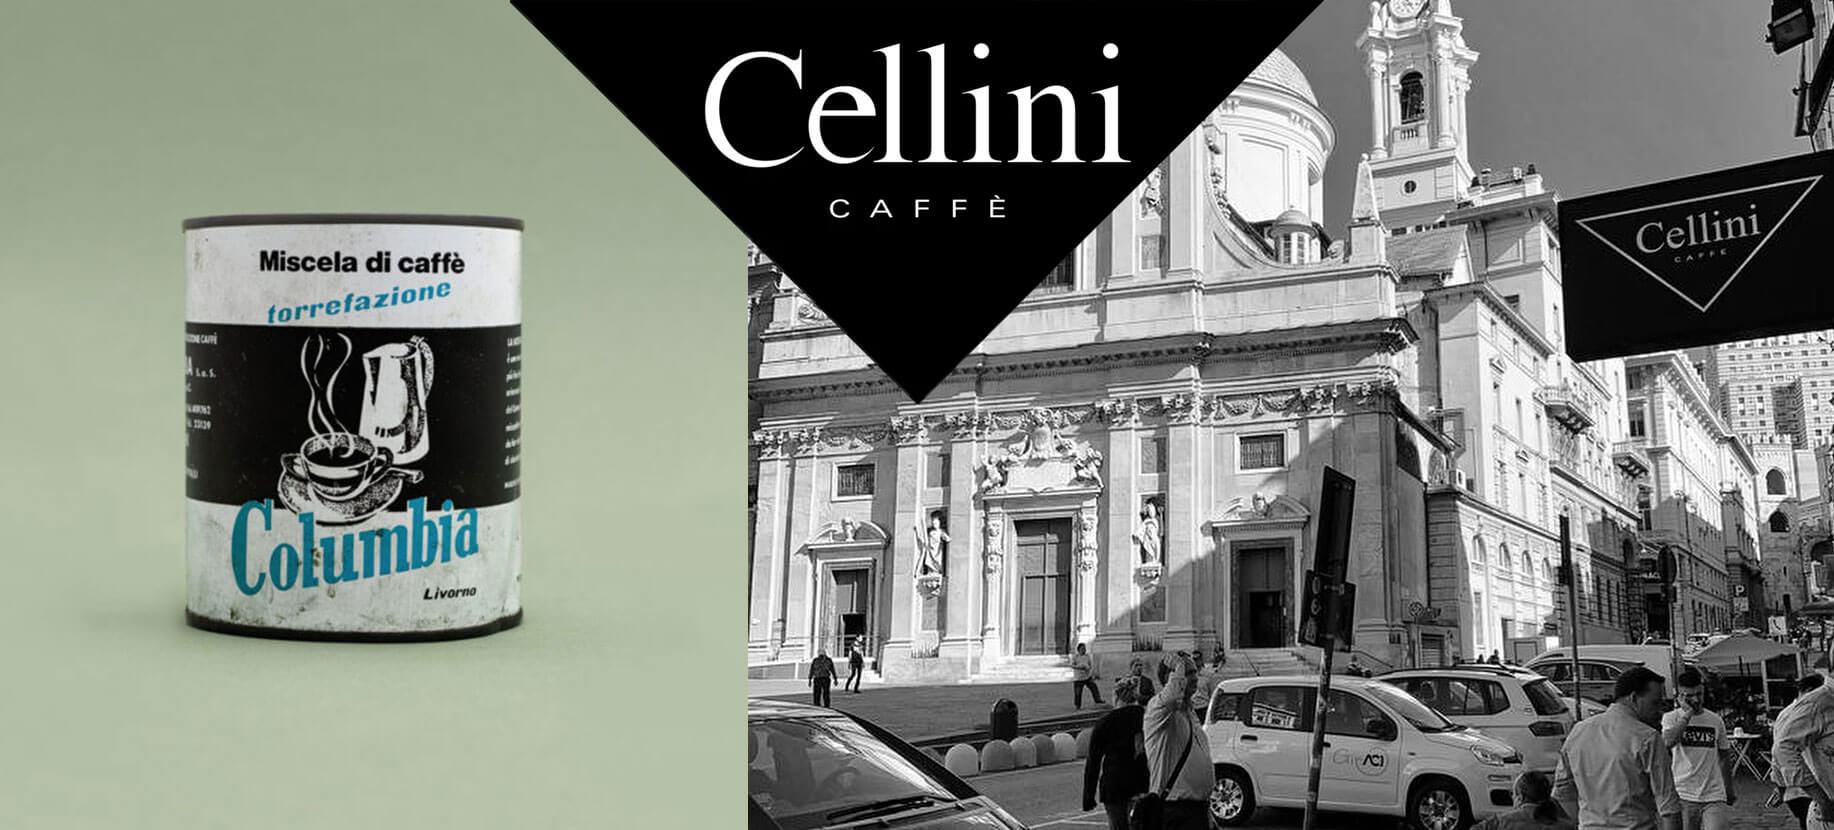 Cellini Kaffee